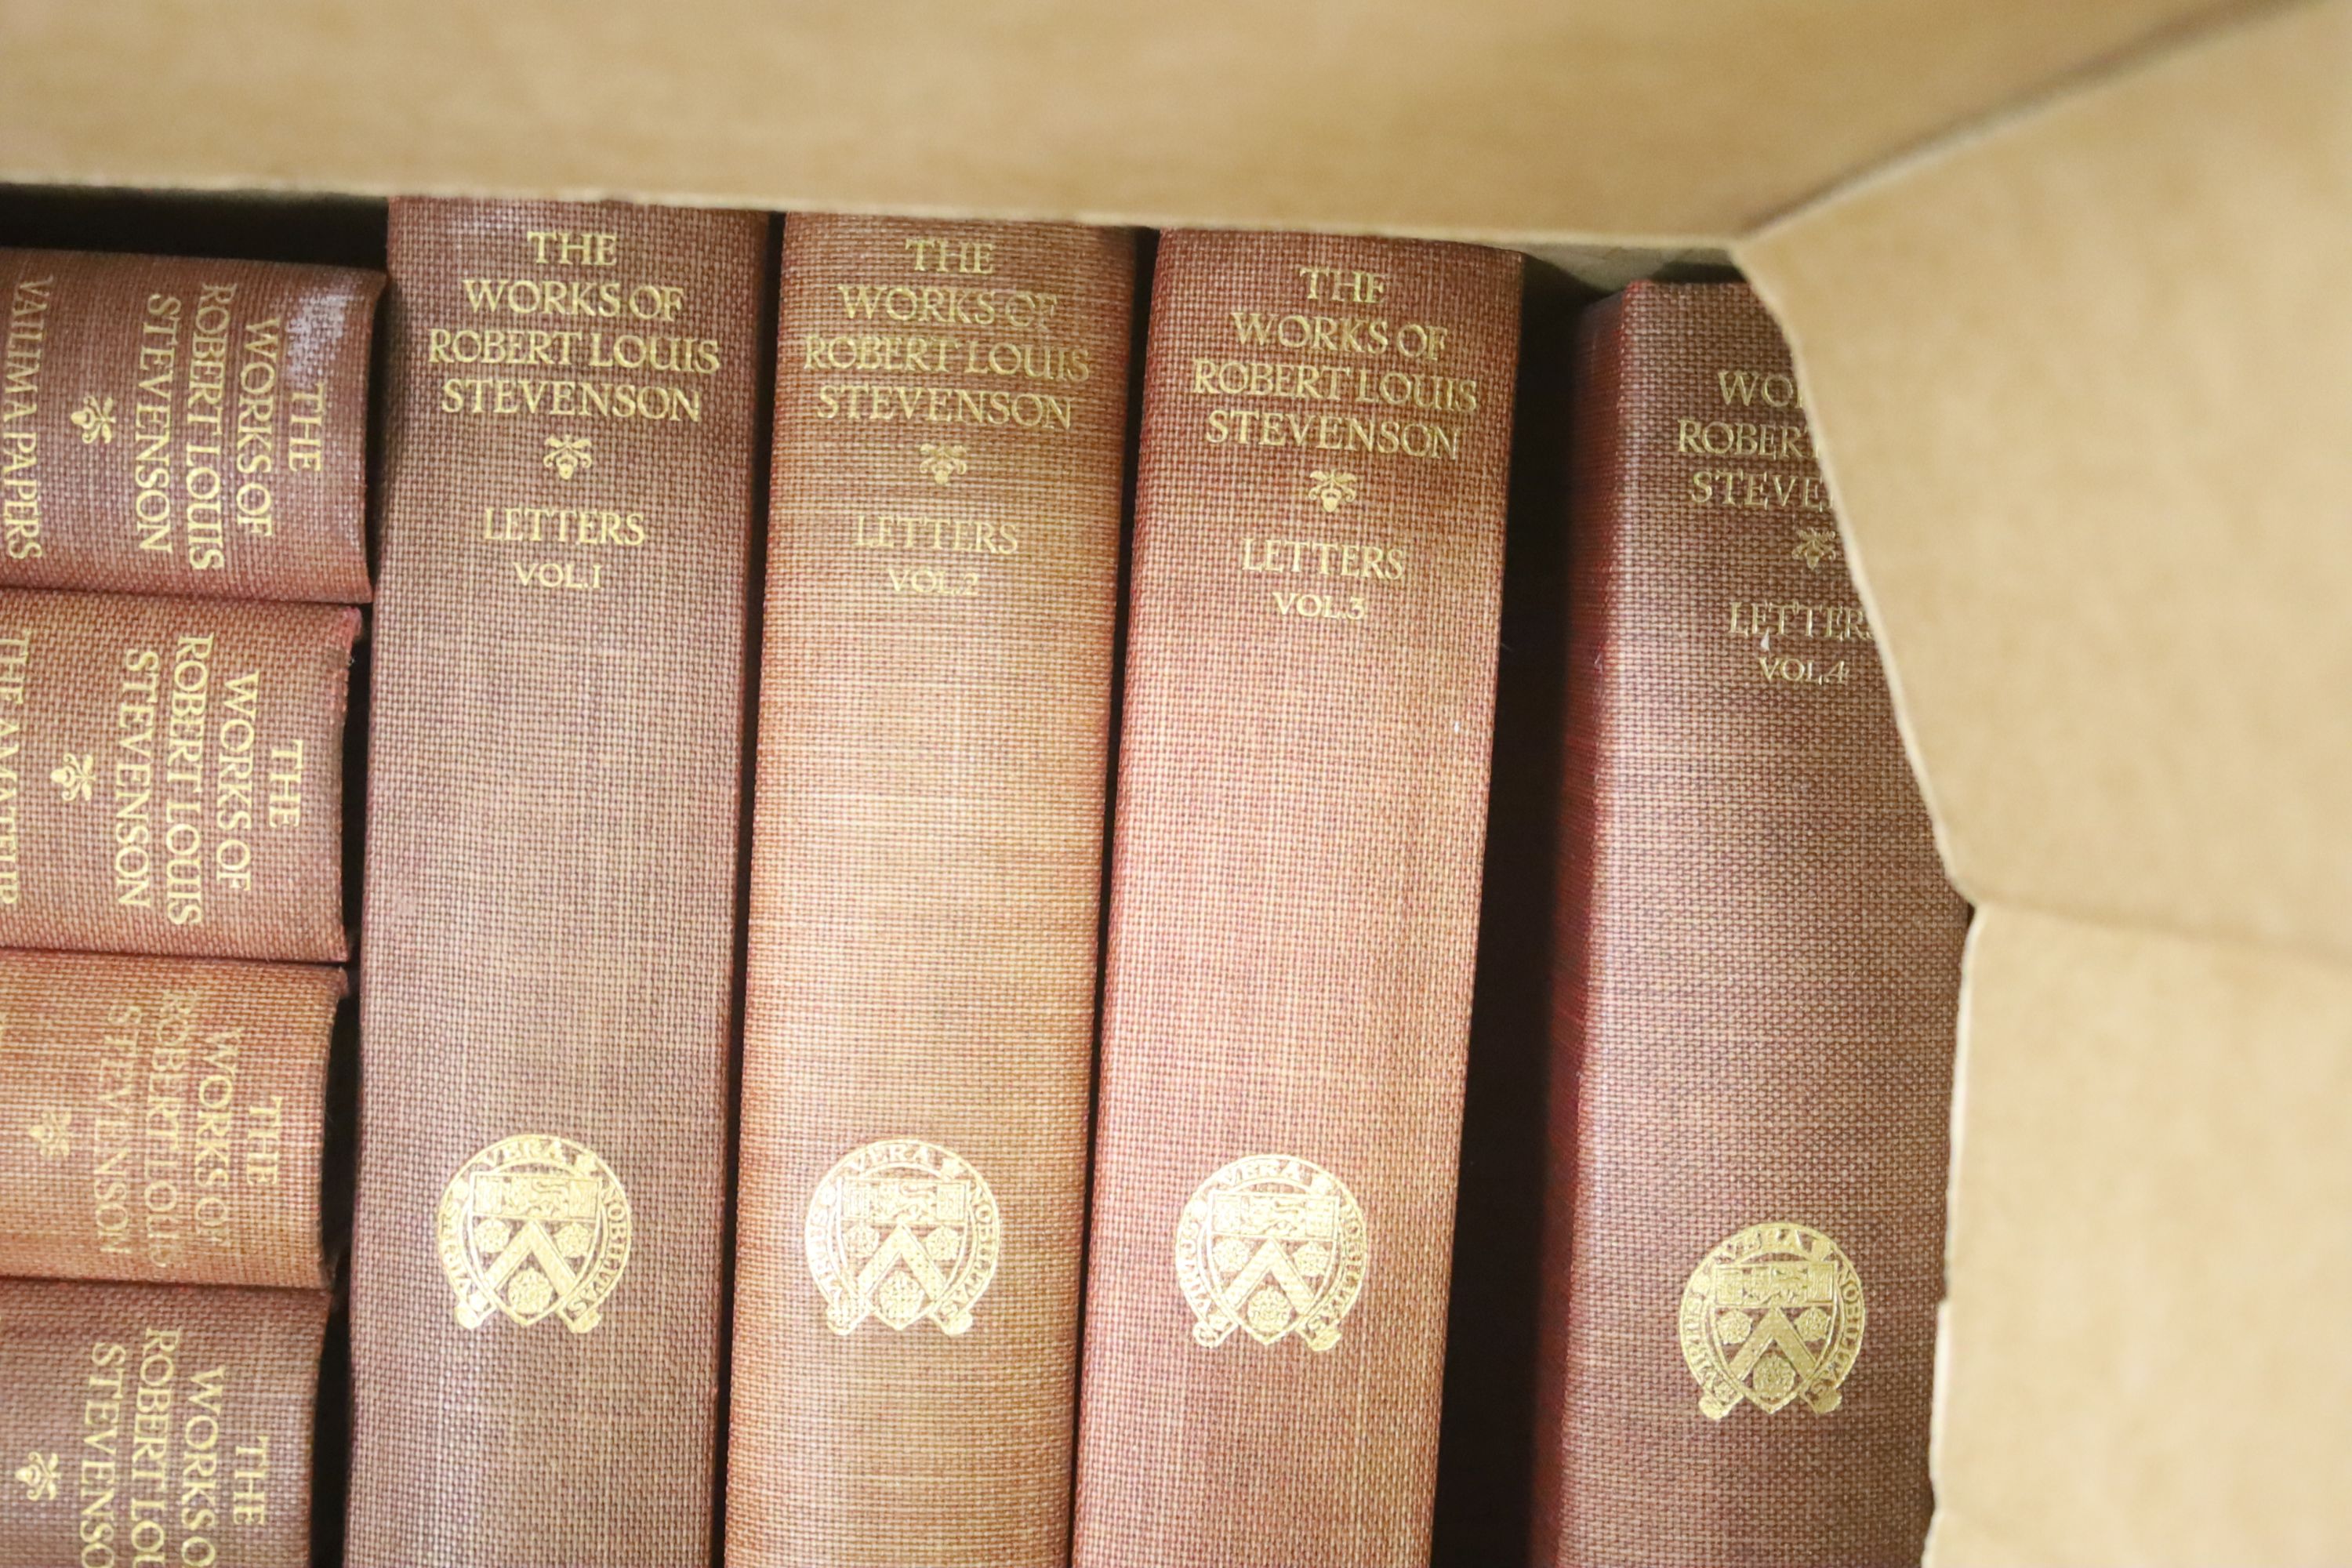 Stevenson, Robert Louis - Works (The Skerryvore edition), 30 vols, William Heinemann, London 1924